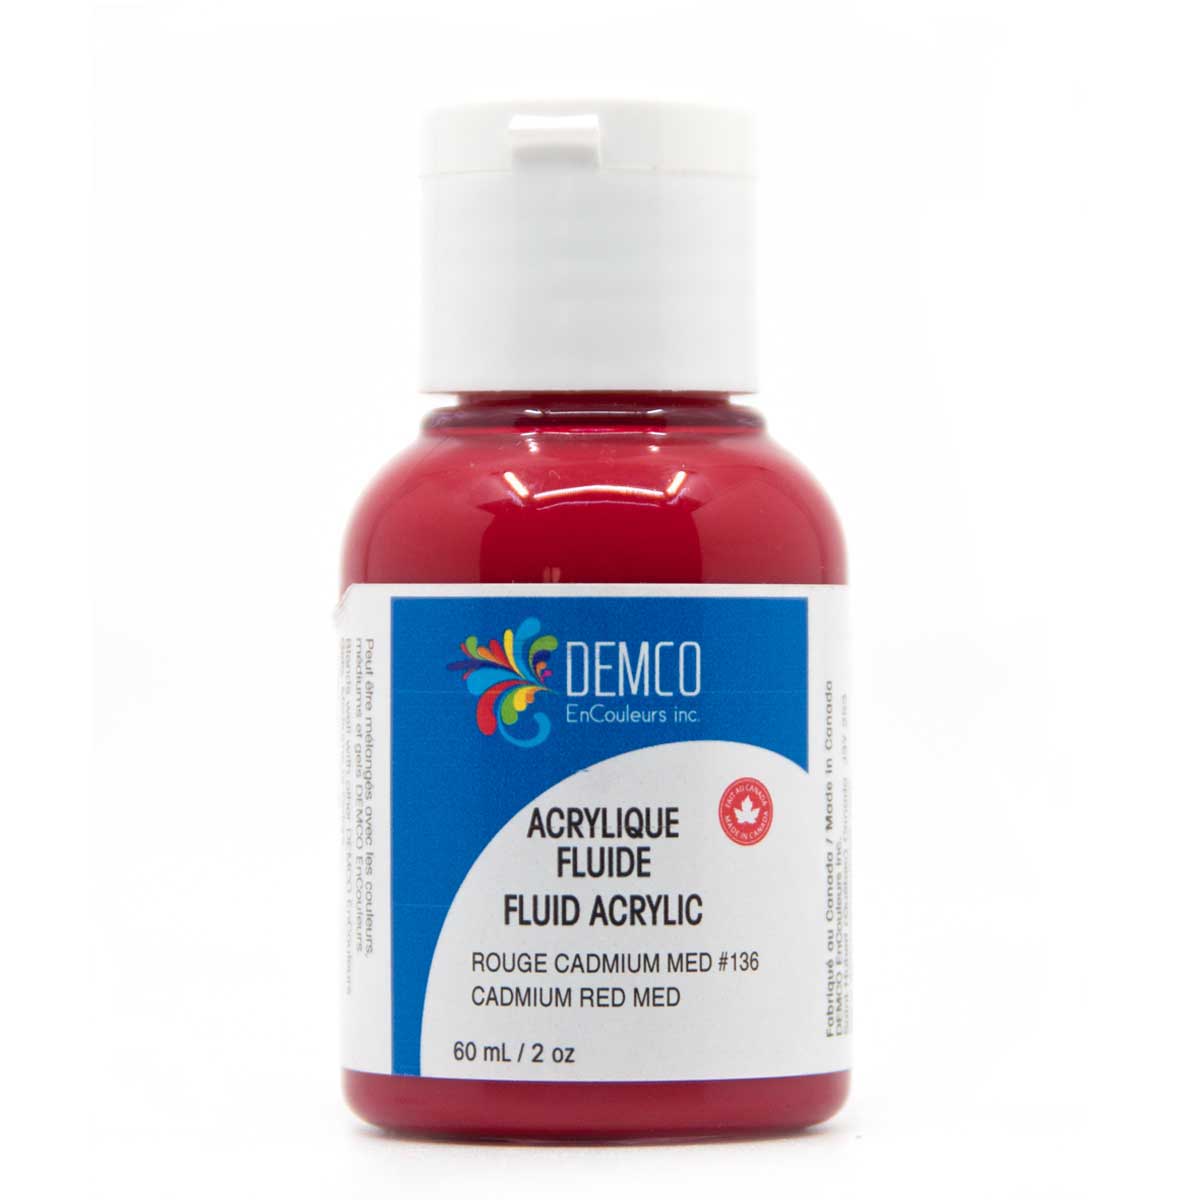 Demco Fluid Acrylic Paint - Cadmium Red Med (Hue) 60 ml